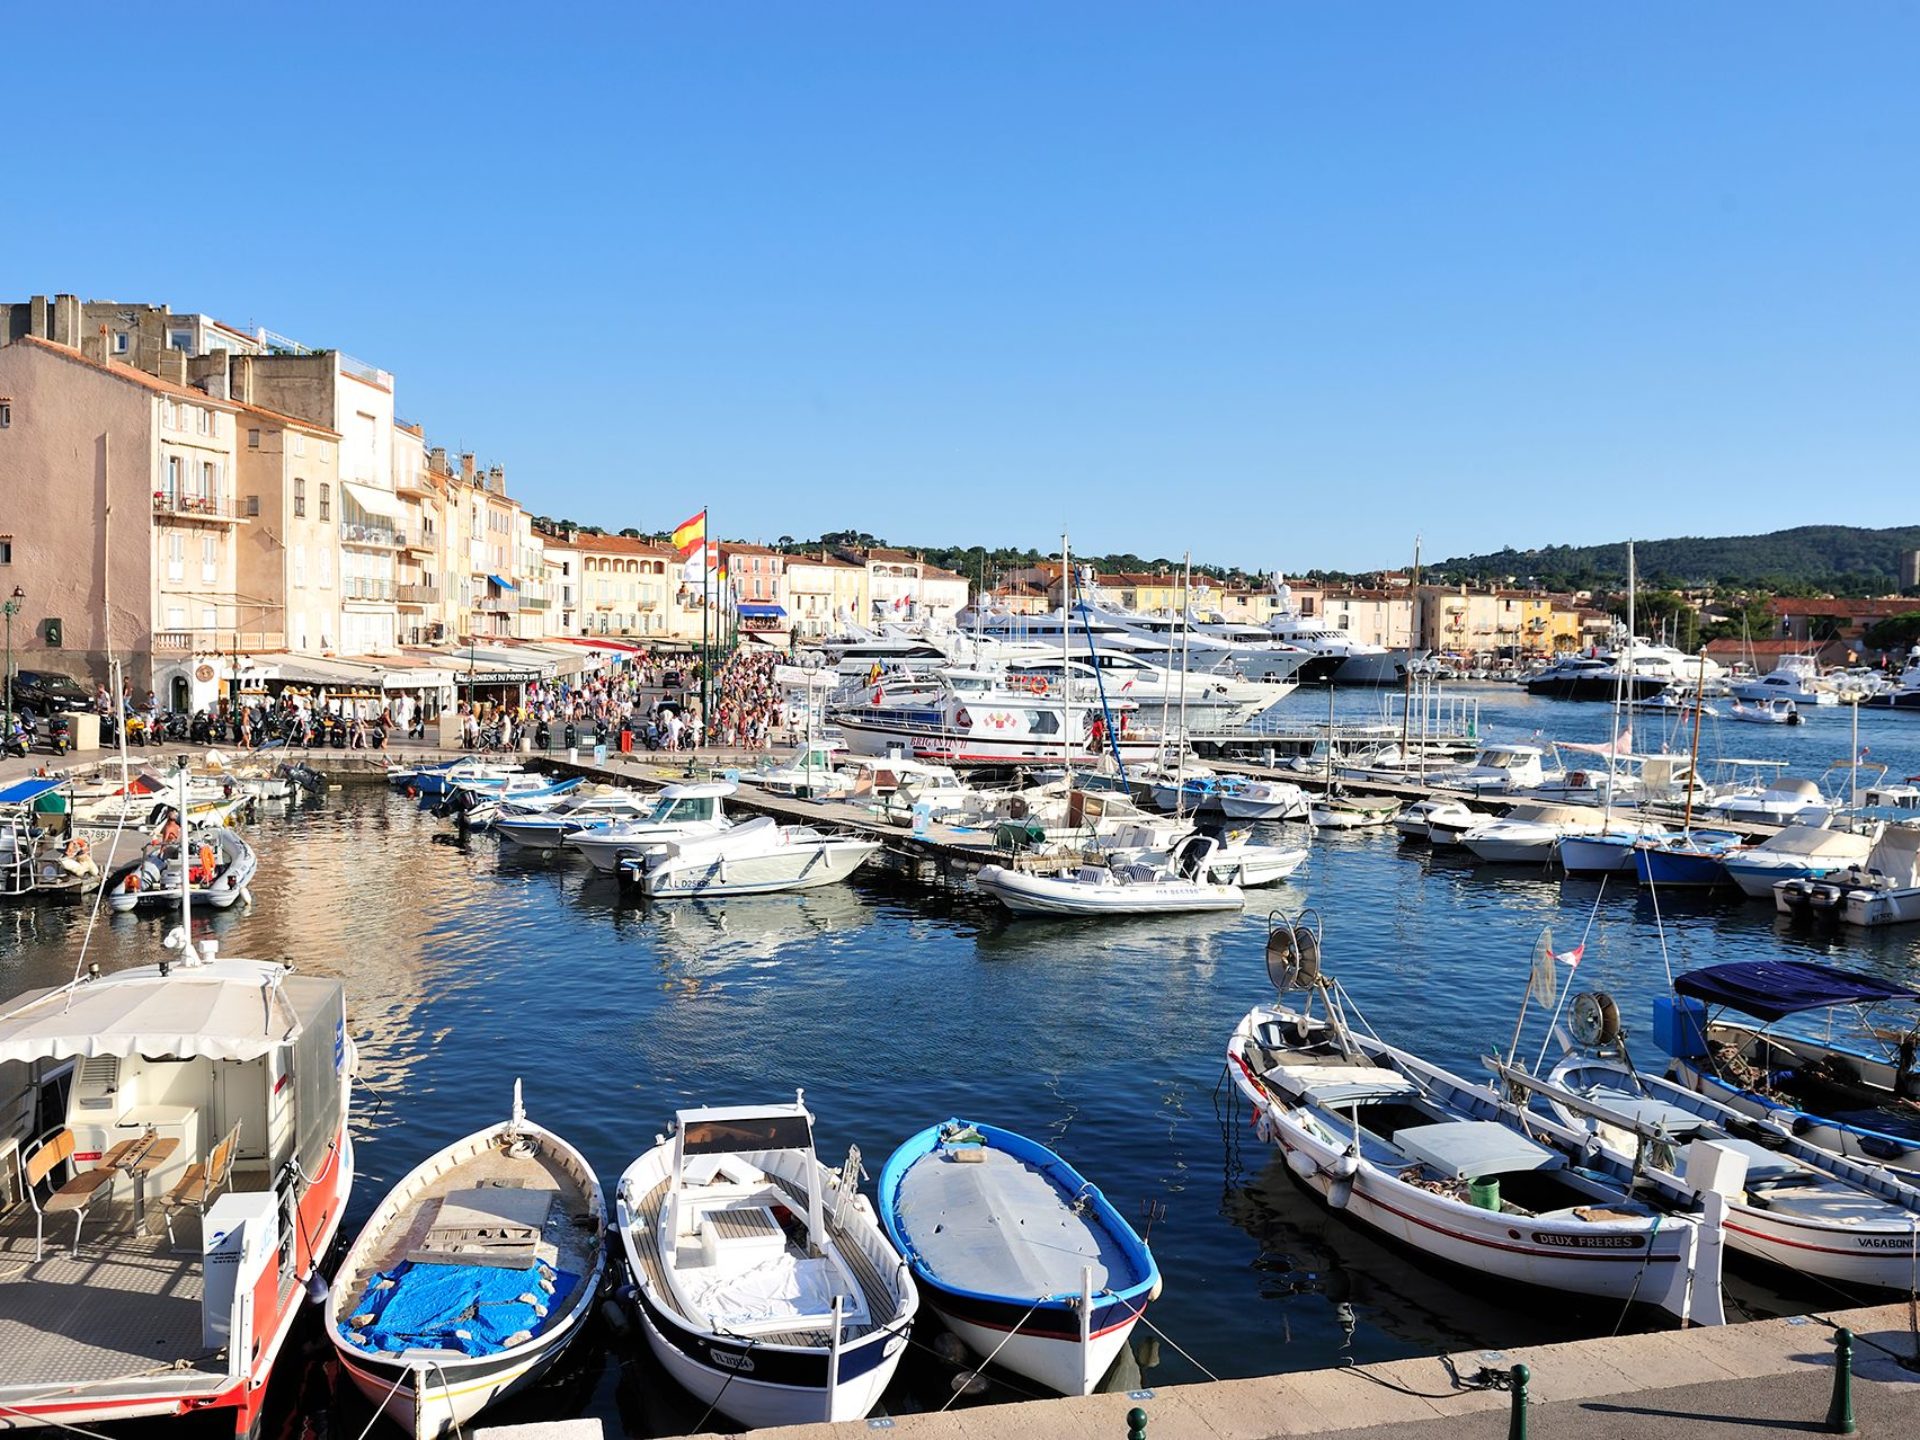 St Tropez Tour l Port Grimaud Tour l Liven Up Monaco